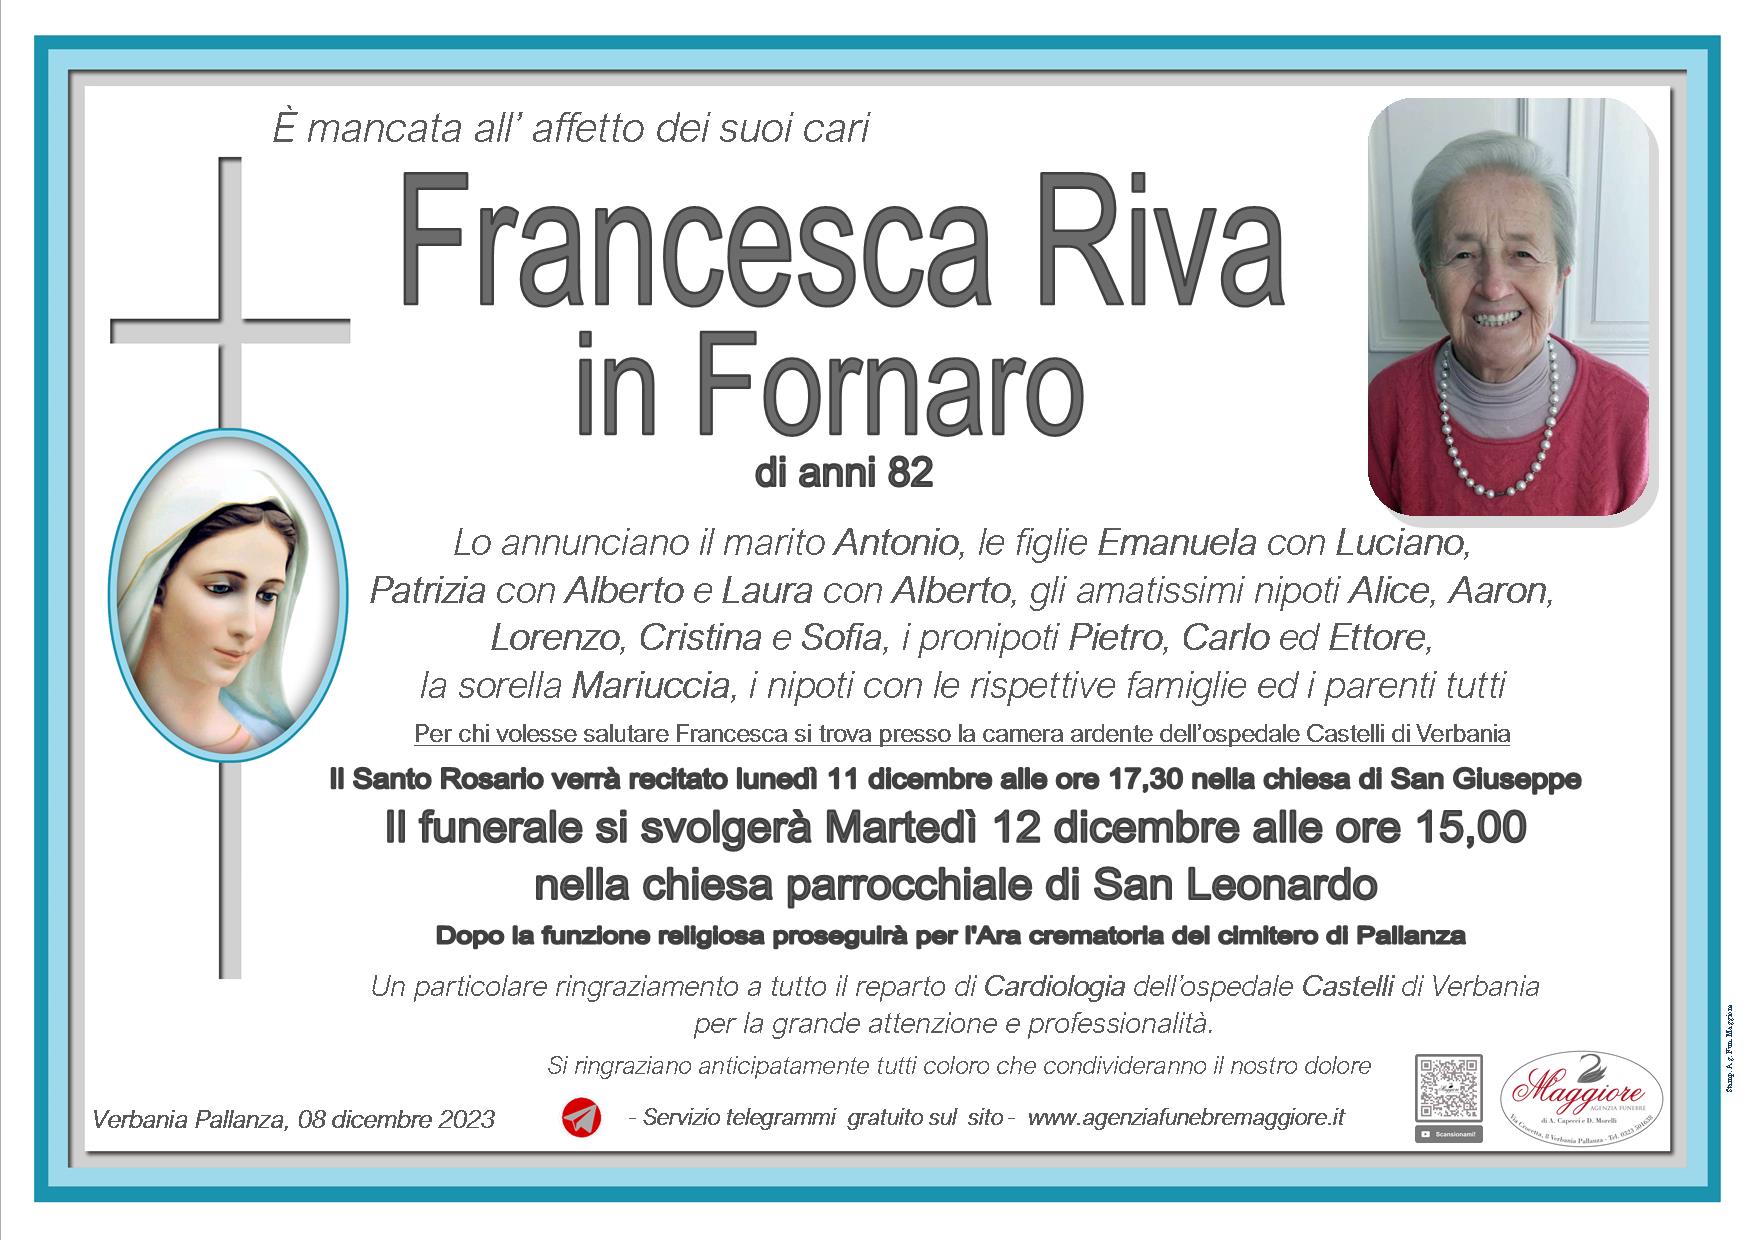 Francesca Riva in Fornaro